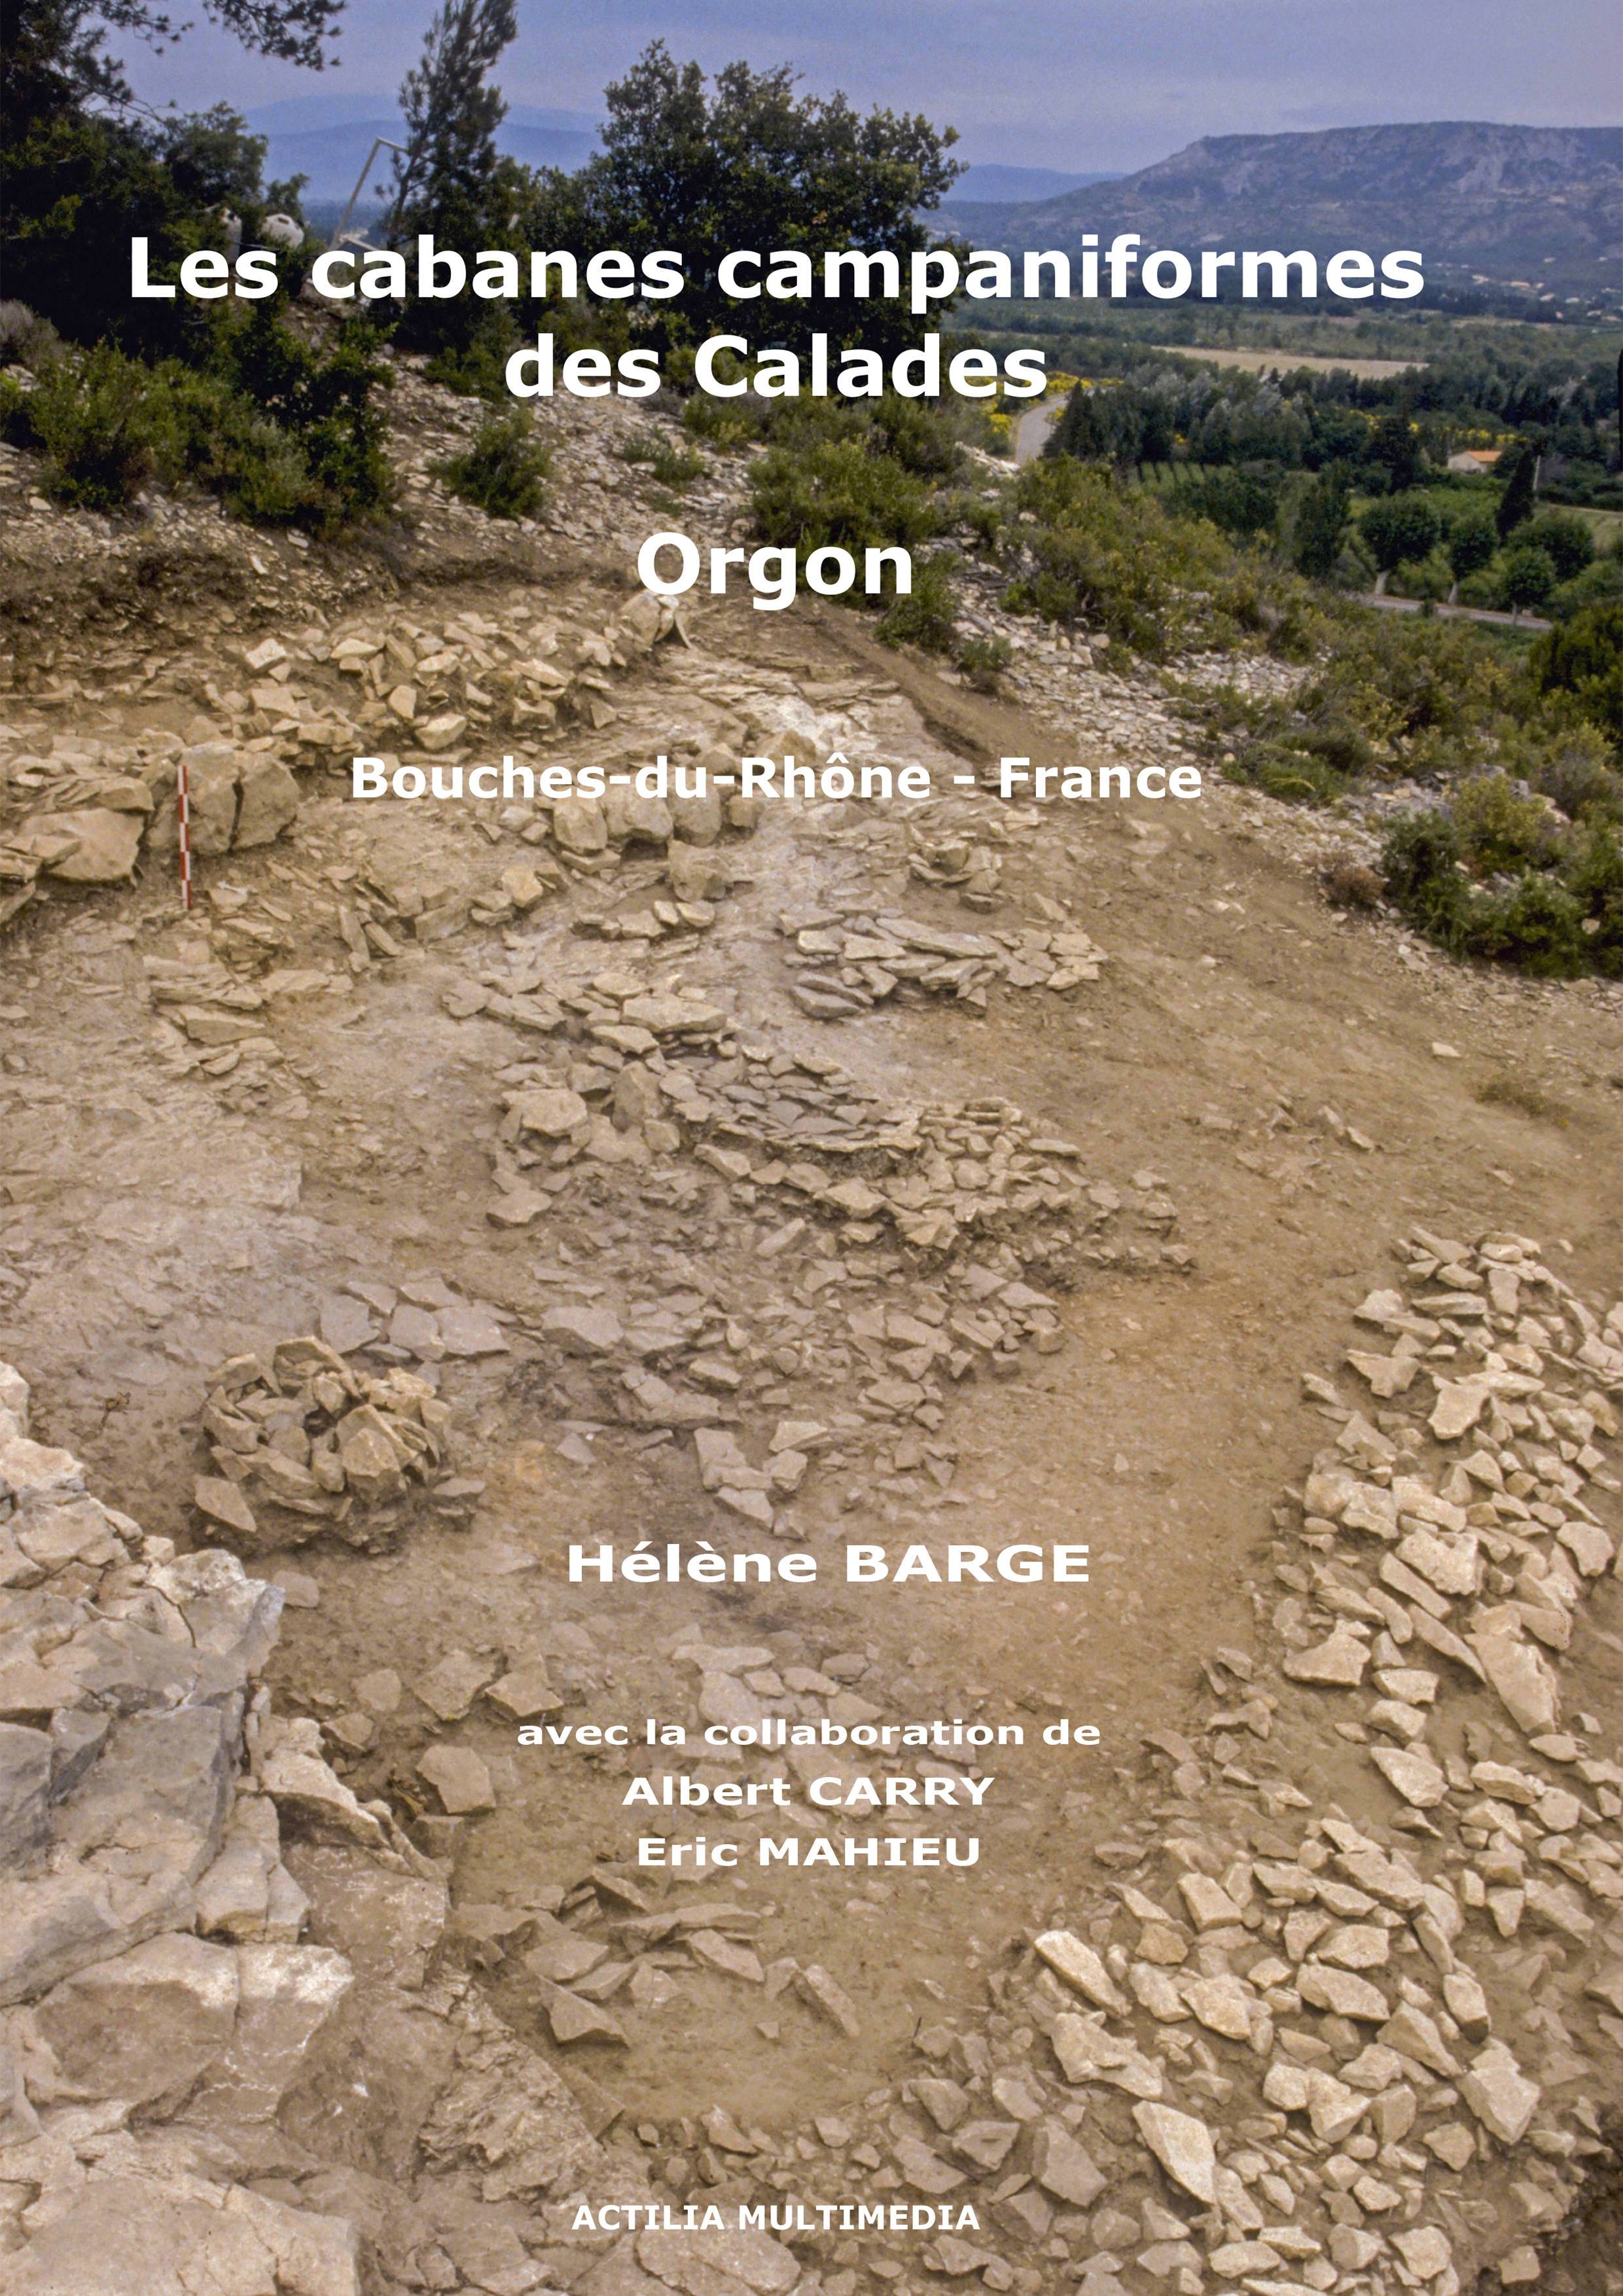 Les cabanes campaniformes des Calades (Orgon - Bouches-du-Rhône), 2019, 225 p., nbr. ill. coul.